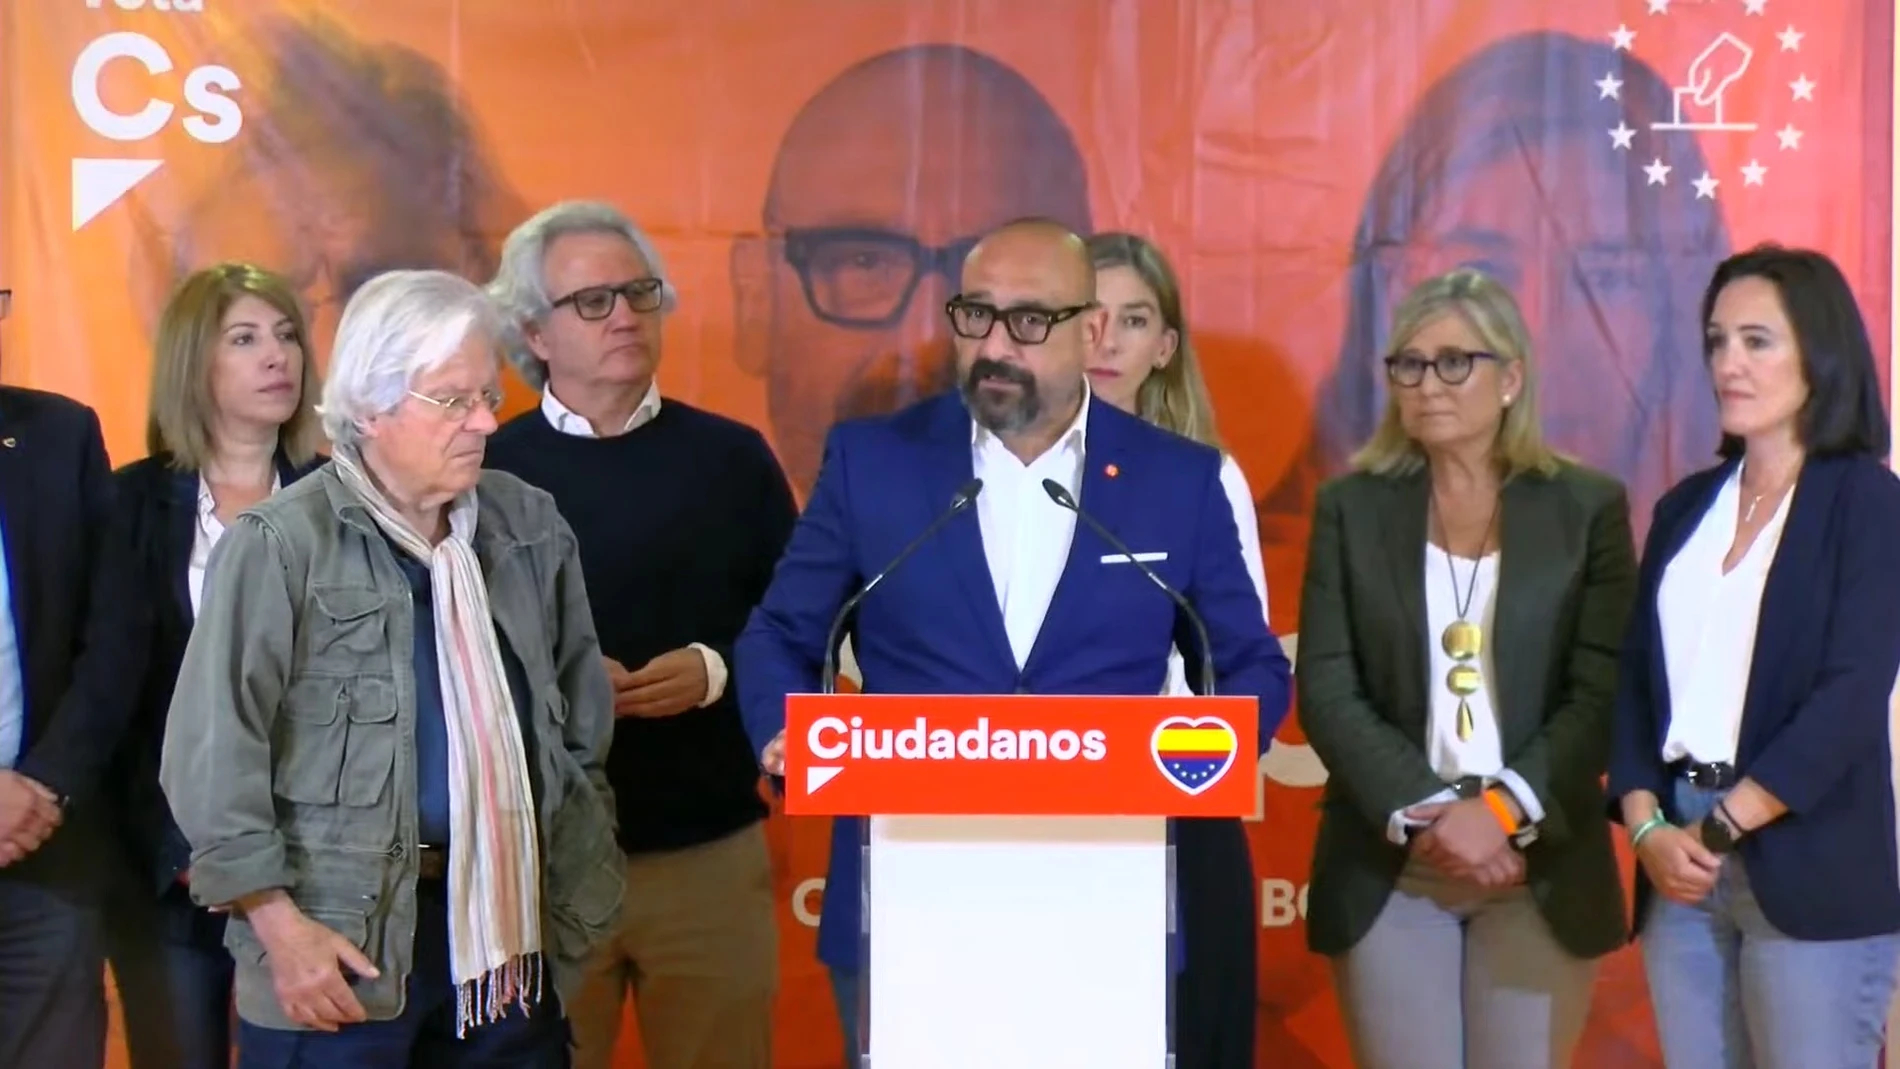 Jordi Cañas interviene tras los malos resultados de Ciudadanos en las elecciones europeas